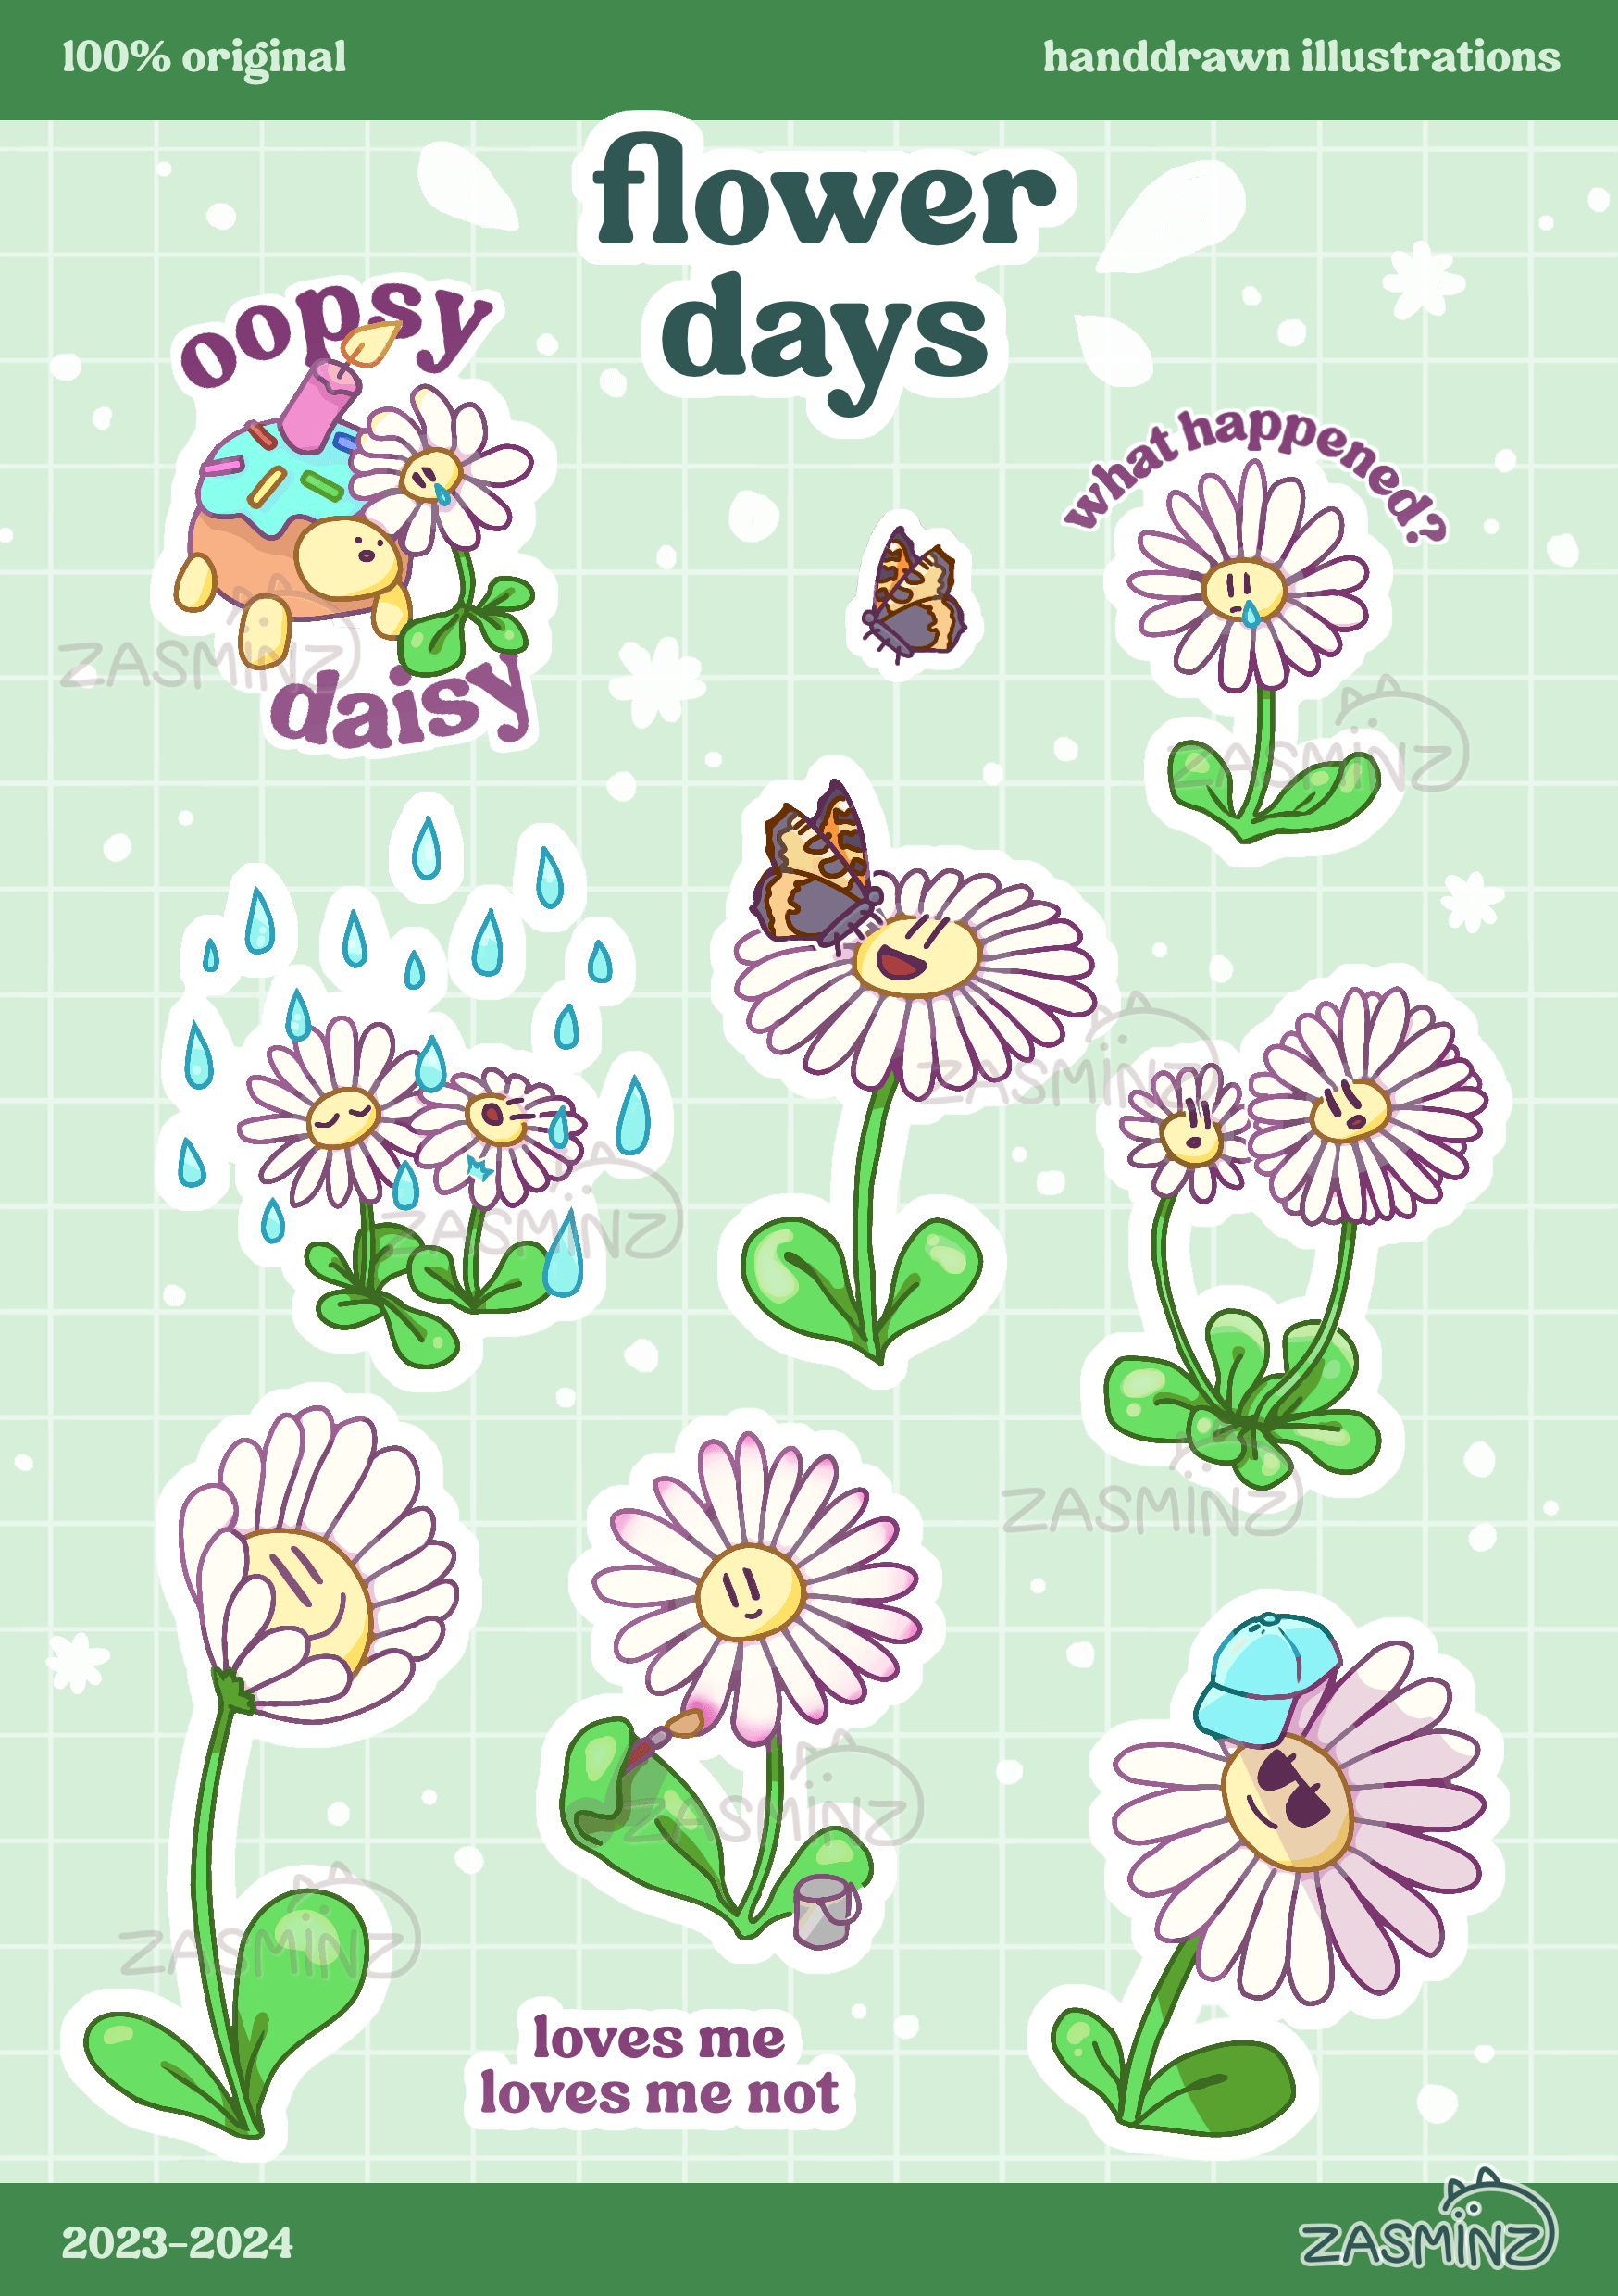 Flower Days Illustrations by Zasminz